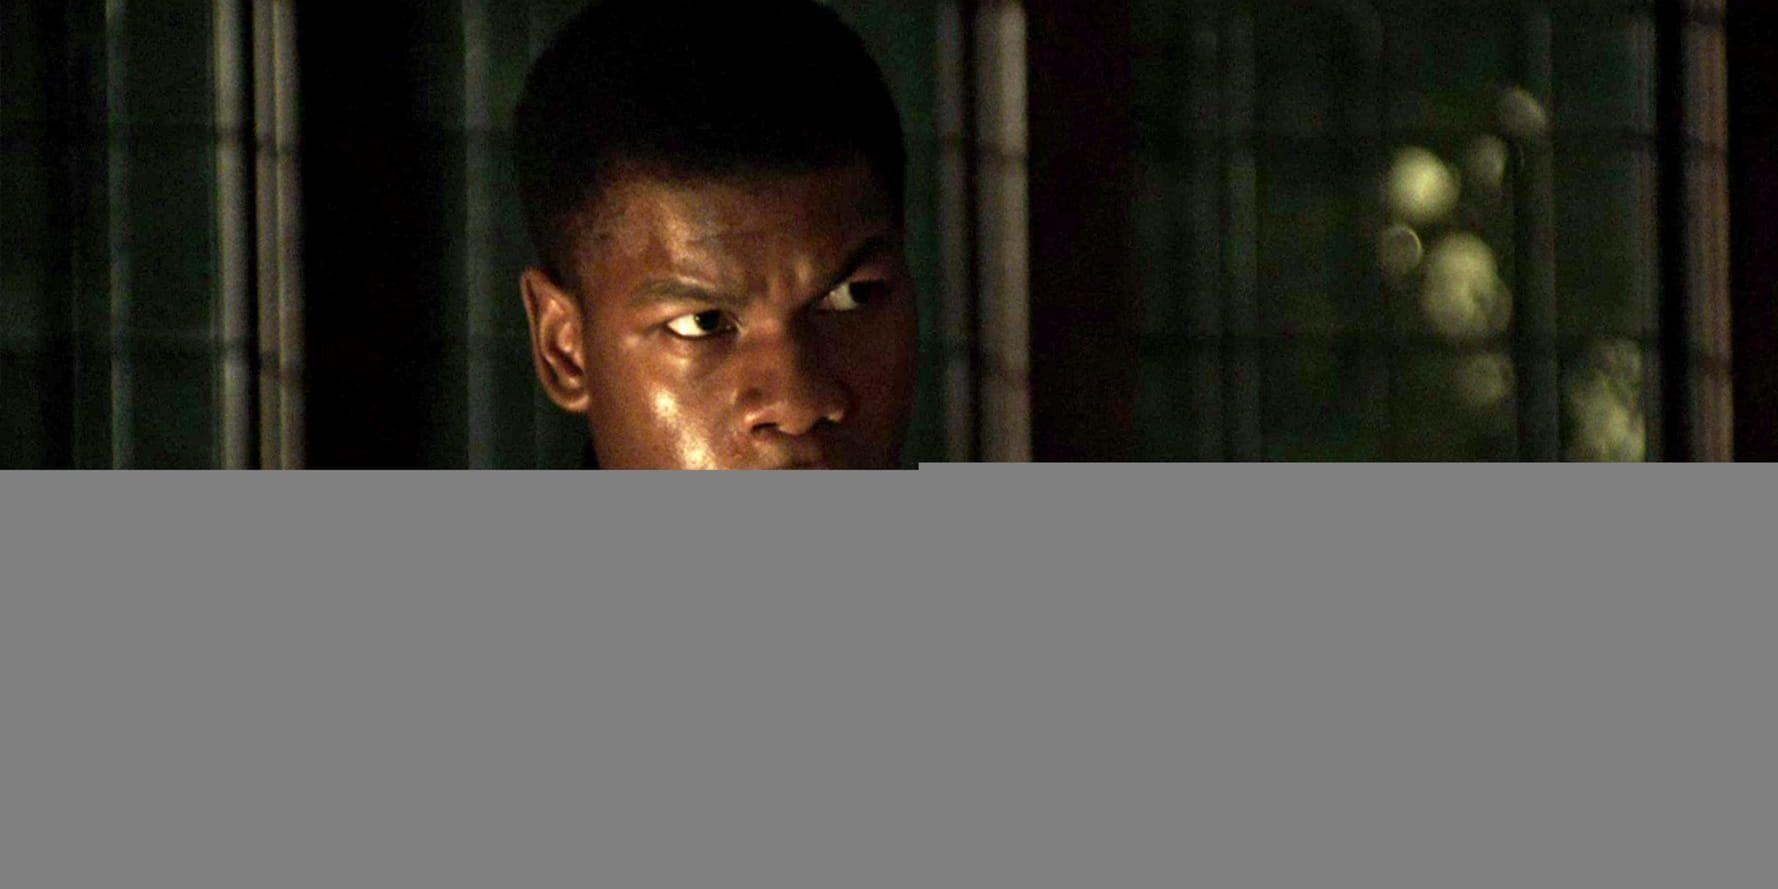 John Boyega spelar en nattvakt som hamnar på fel ställe vid fel tidpunkt i "Detroit". Pressbild.